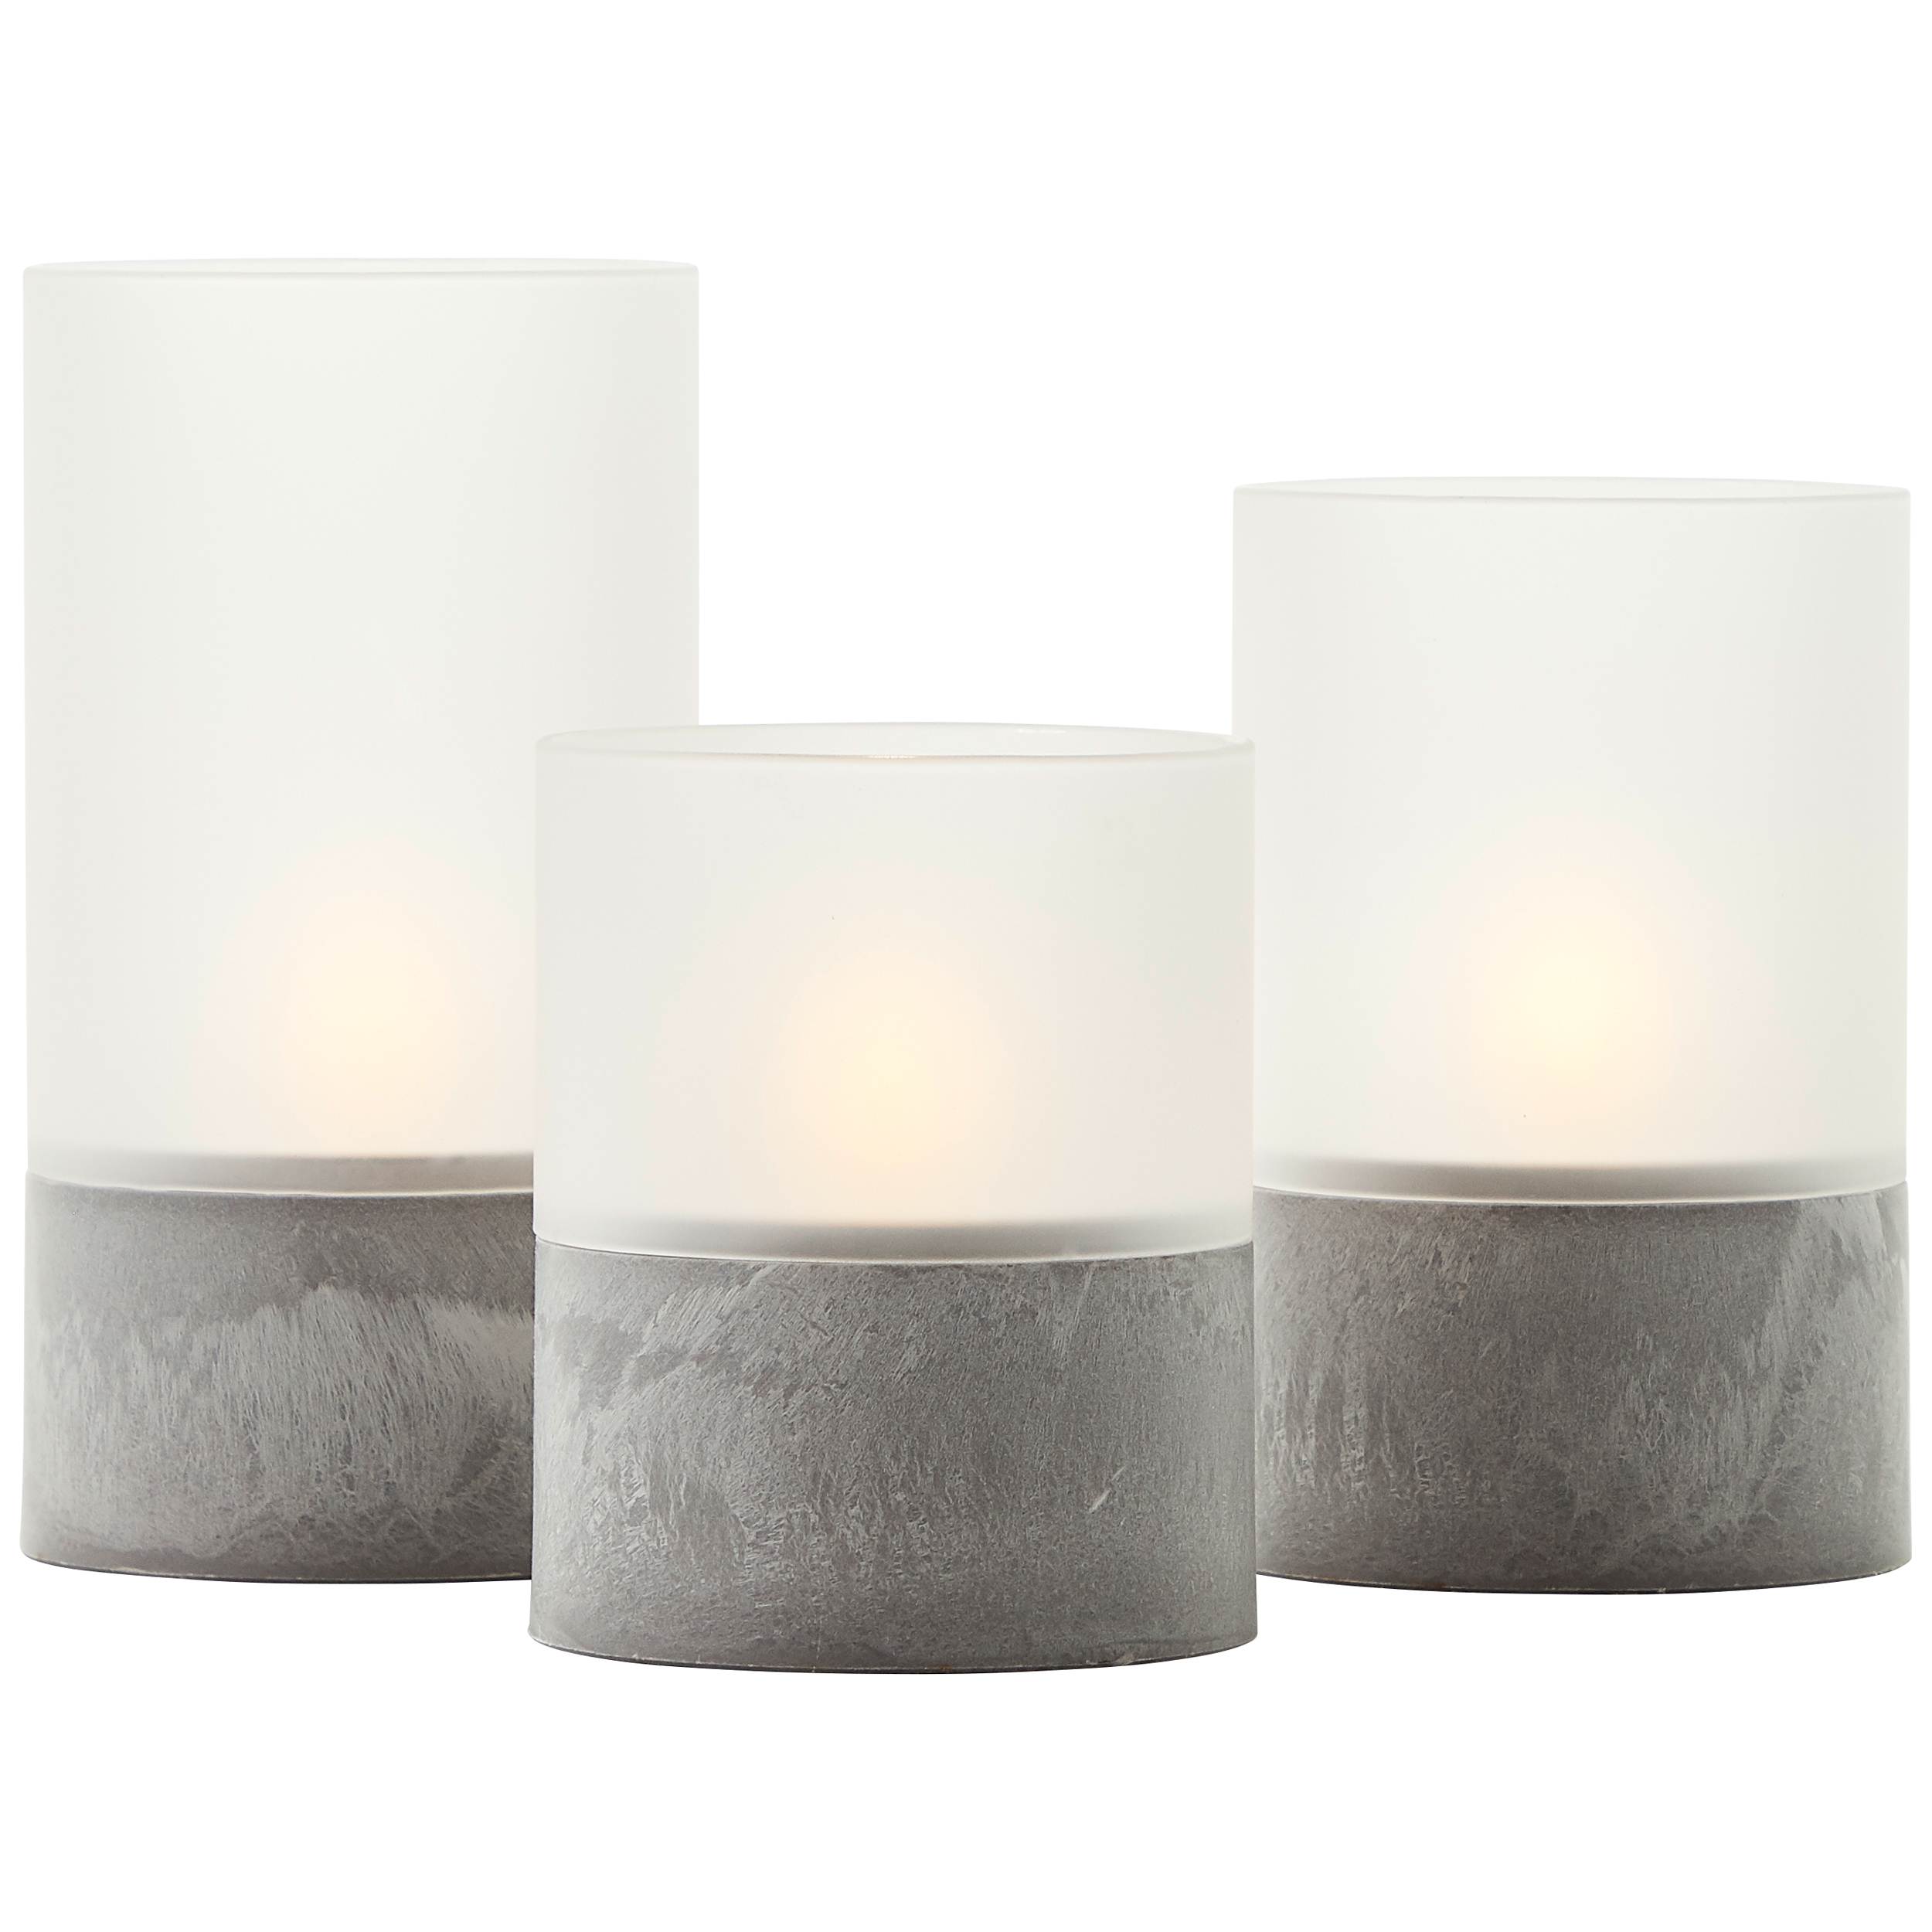 Bougie LED Kerzen 3er-Set grau/weiß matt